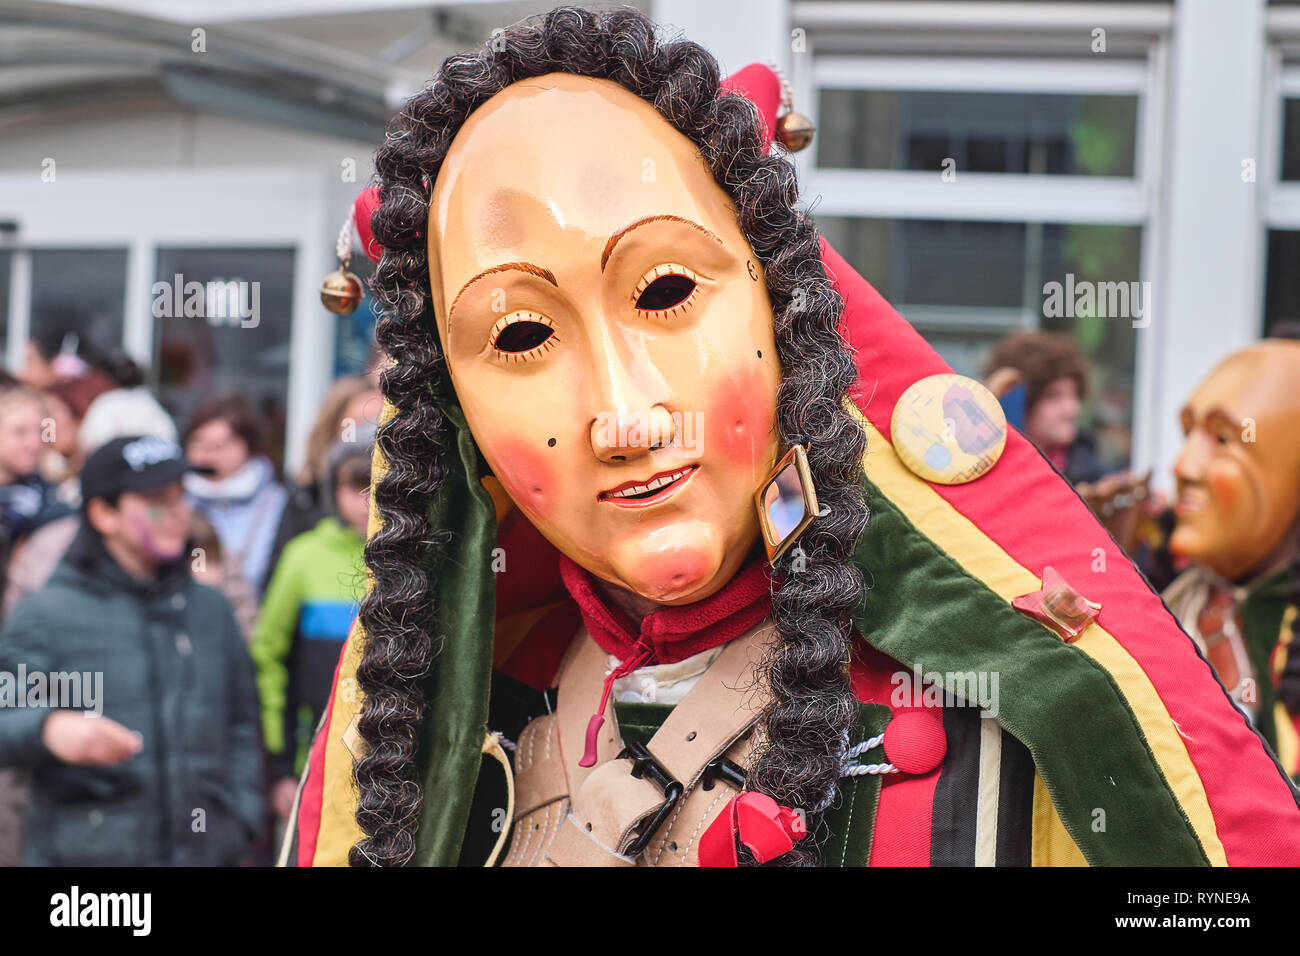 Carnaval haut en couleurs figure avec friendly masque. Carnaval de rue dans le sud de l'Allemagne - Forêt Noire. Banque D'Images